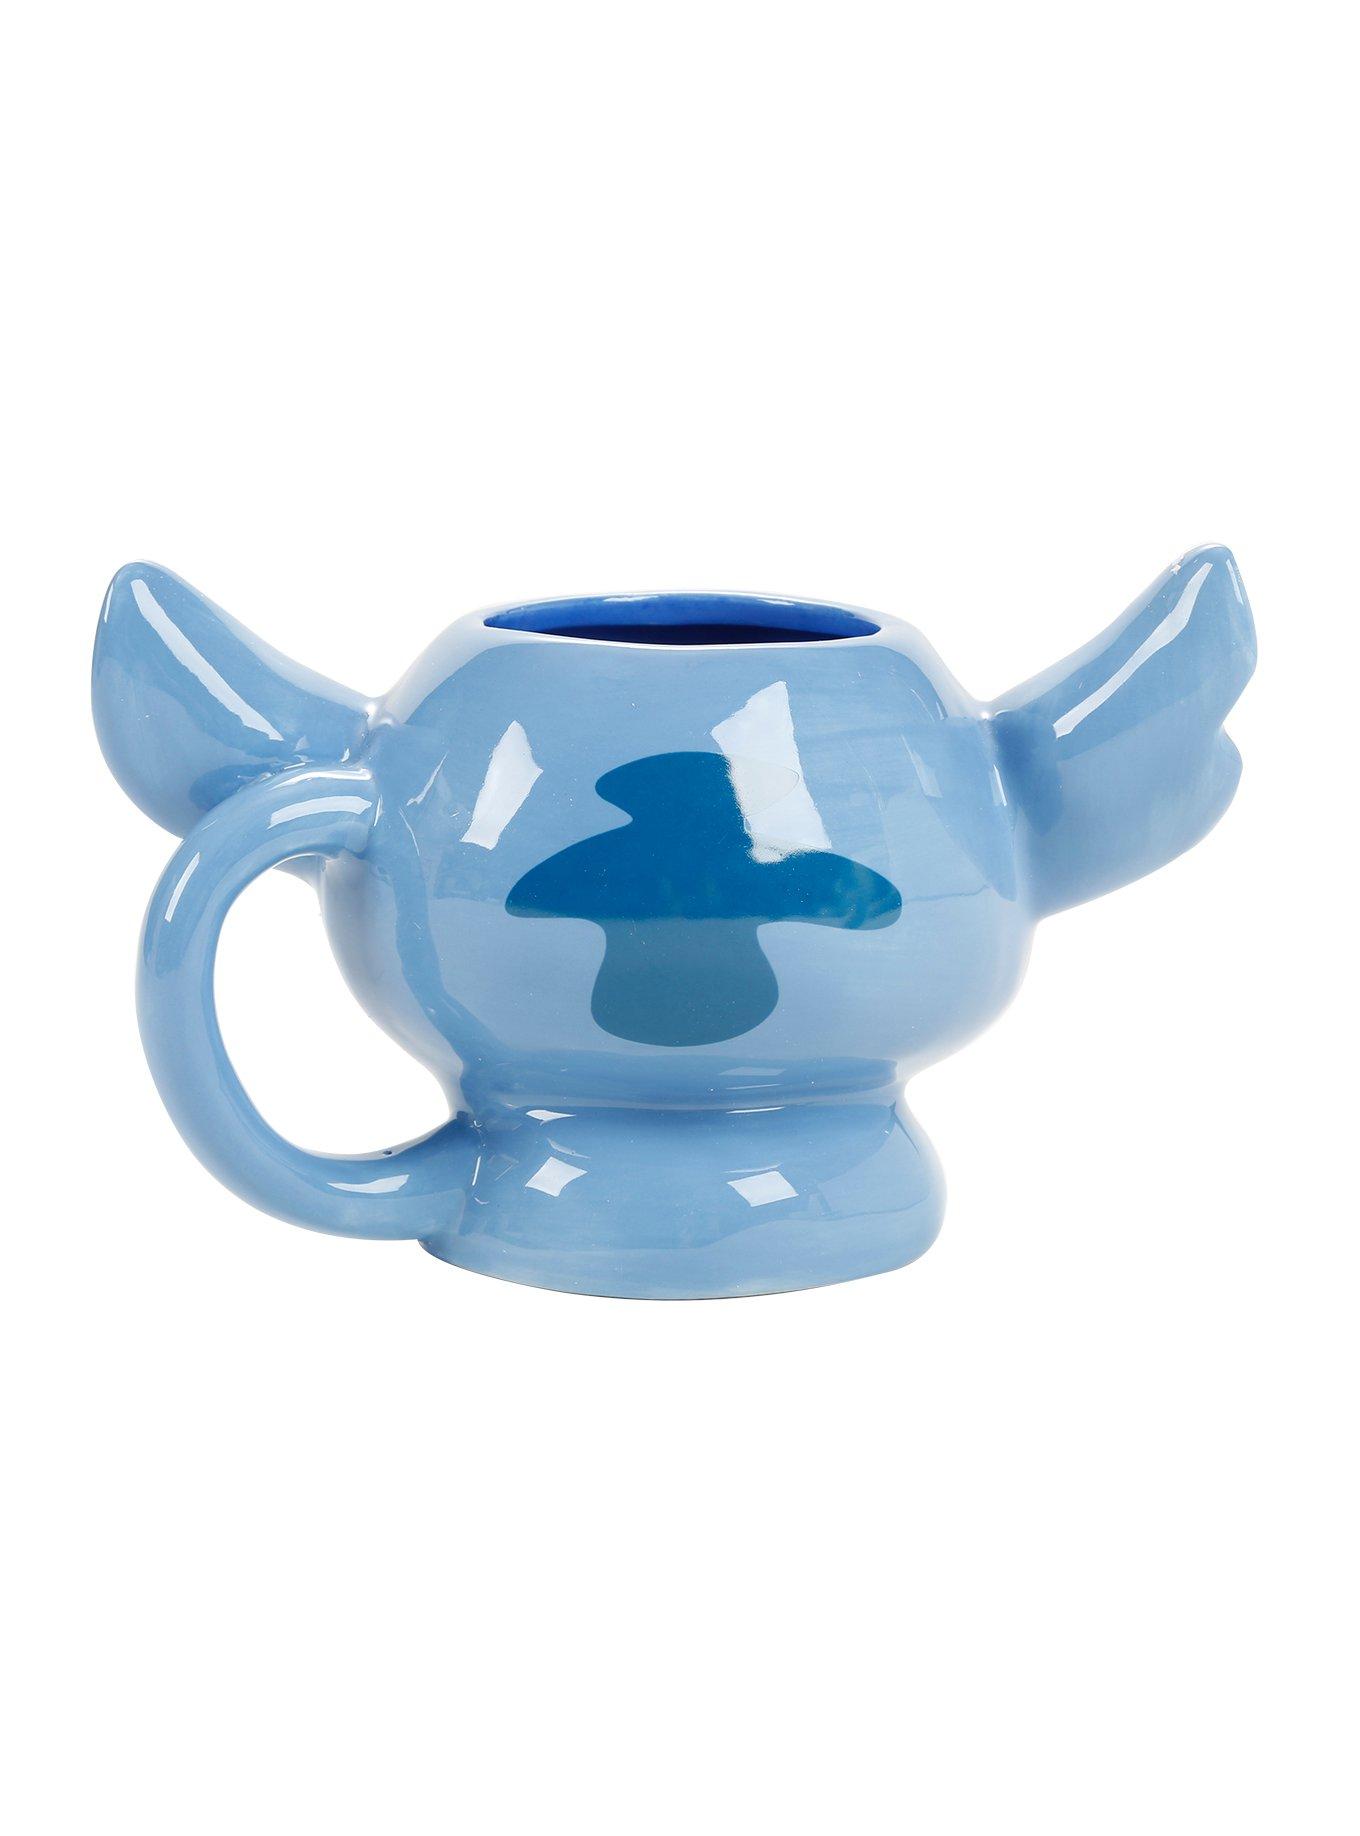 Disney Lilo & Stitch Figural Stitch Mug, , alternate